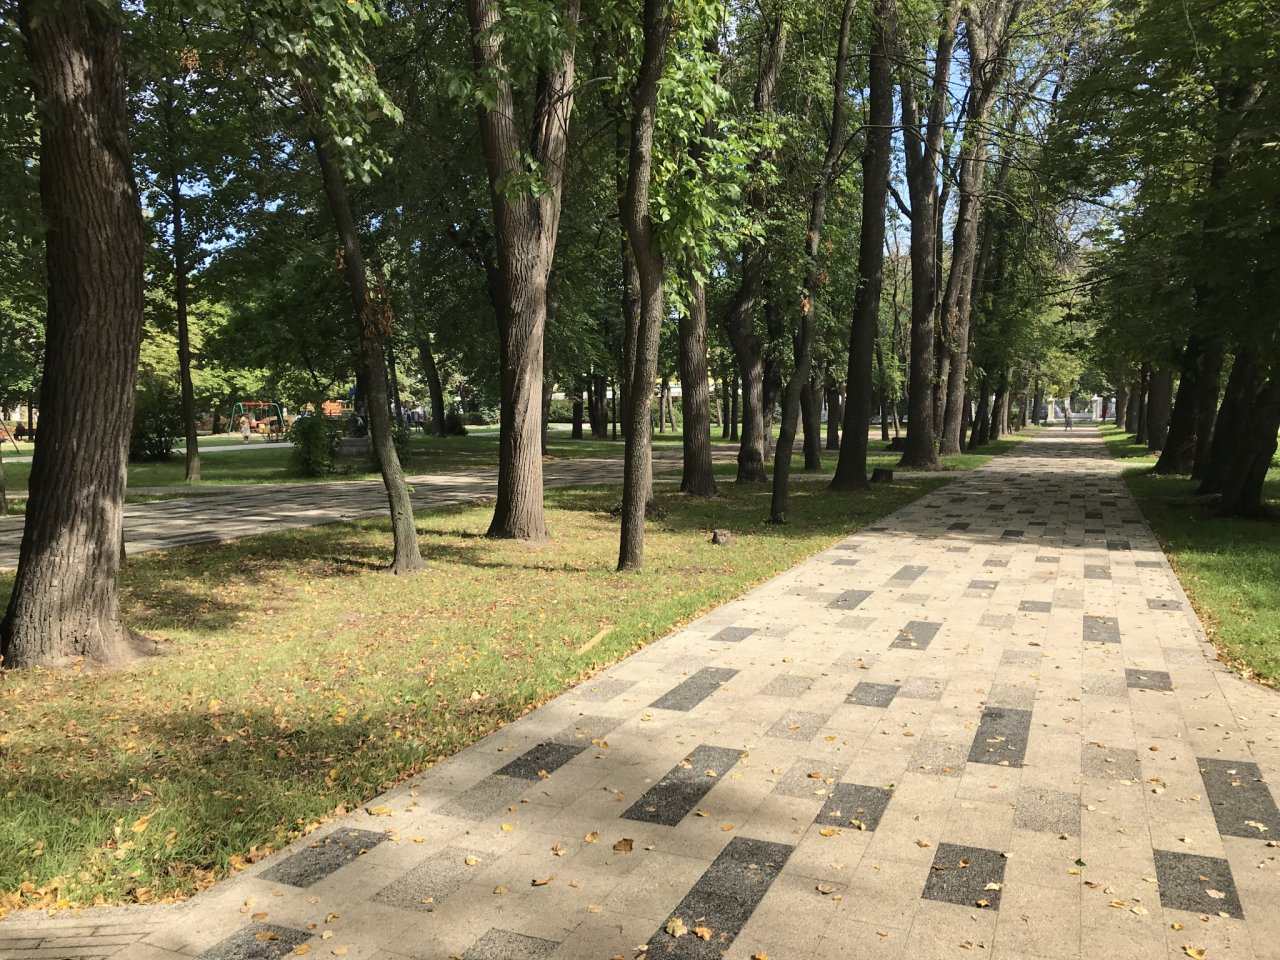 Деревья и плитка: на что в Наташкином парке потратят 21 миллион рублей